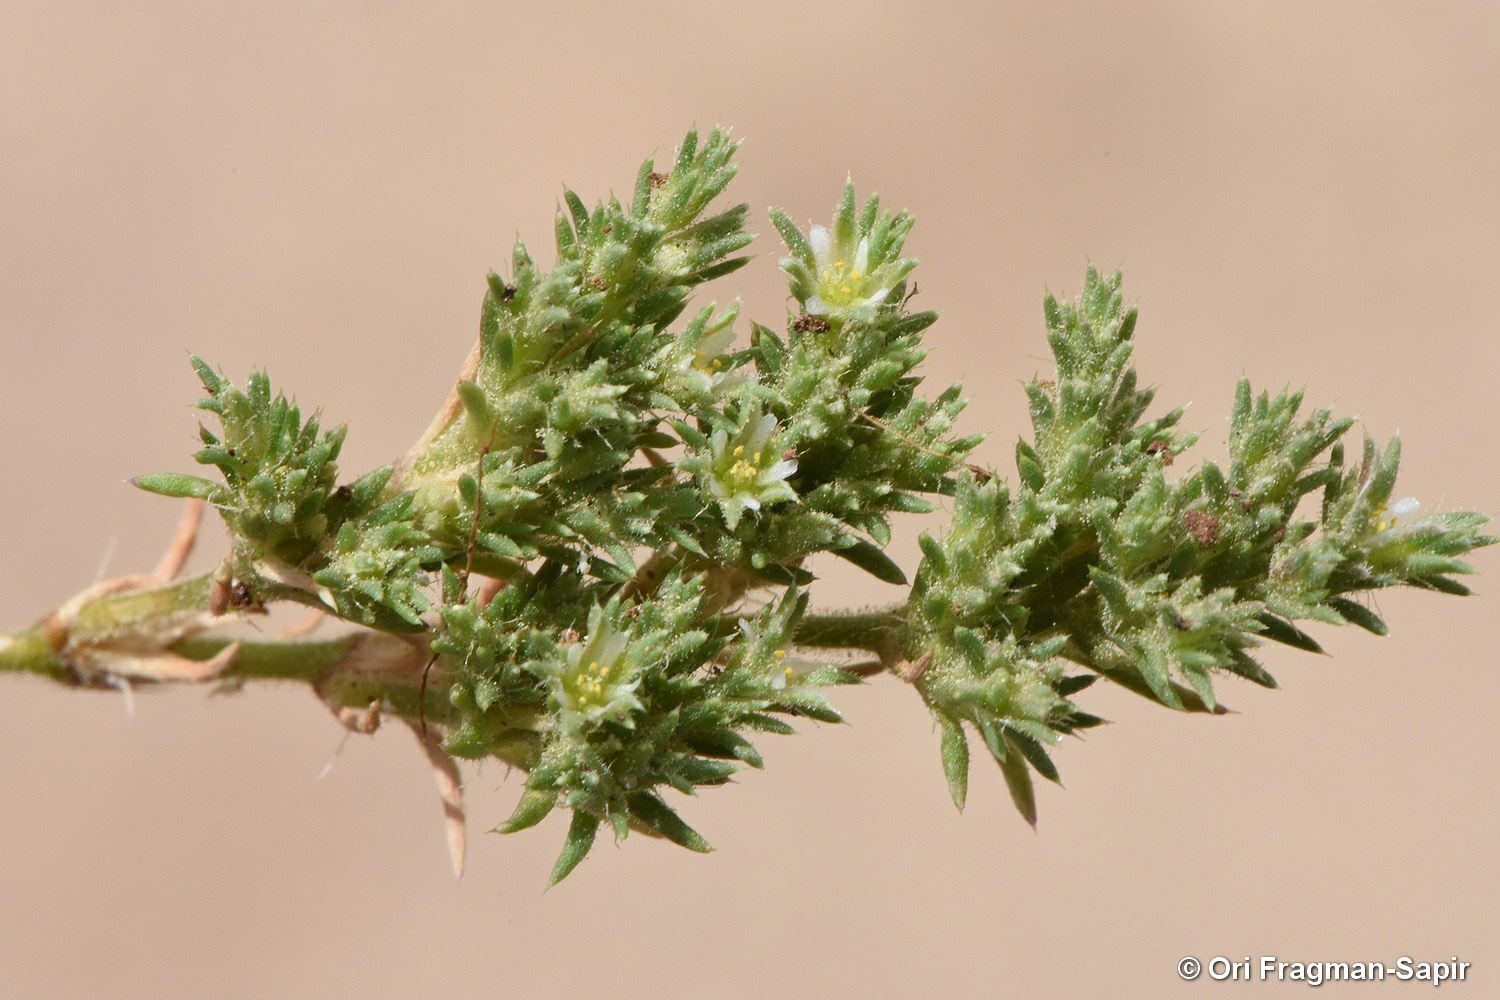 Loeflingia hispanica - לפלינגיה ספרדית